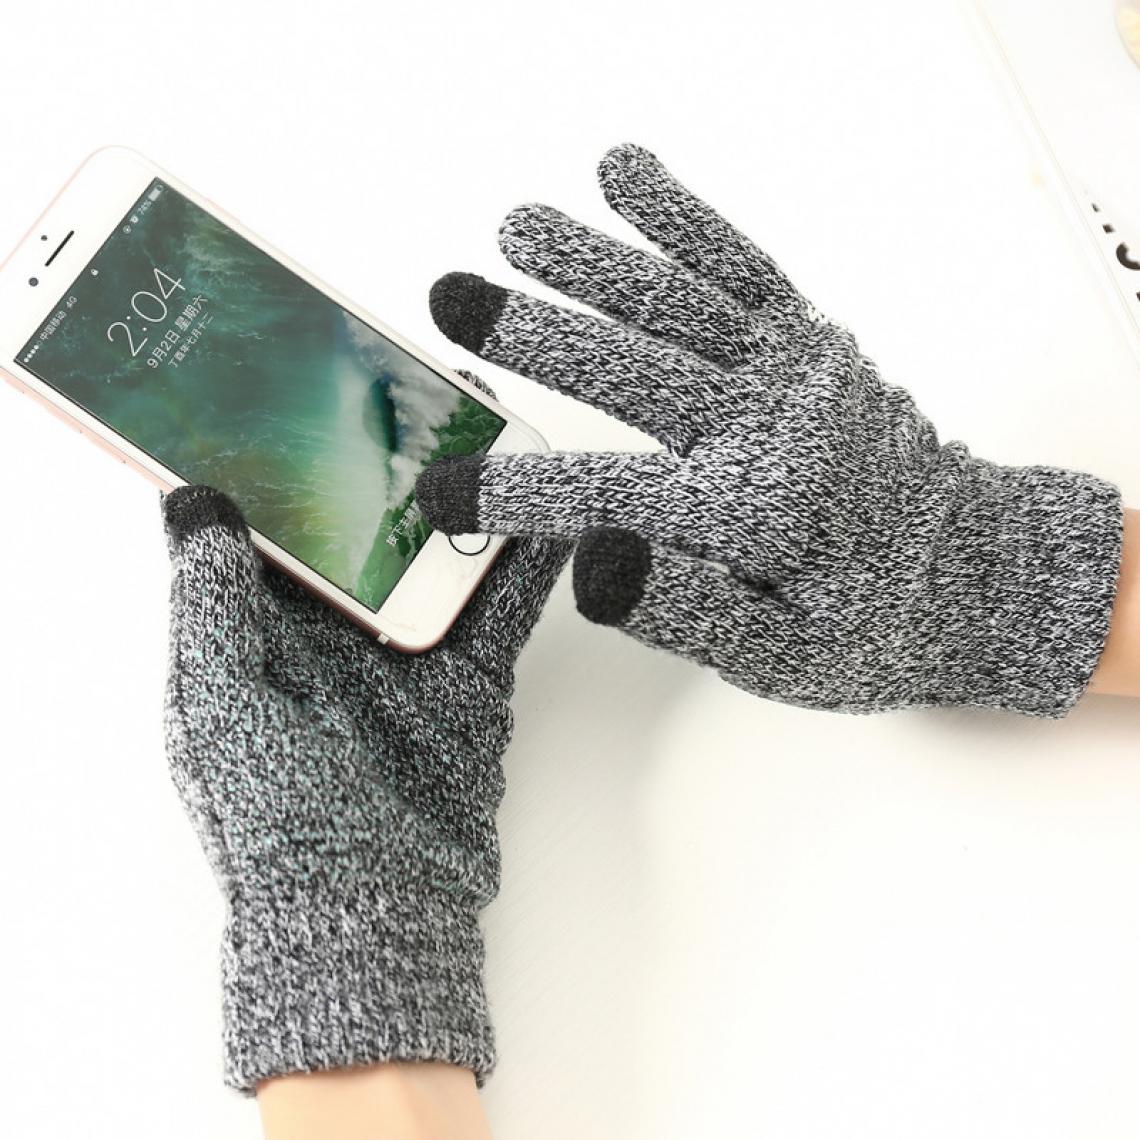 Shot - Gants Homme tactiles pour SAMSUNG Galaxy J4+ Smartphone Taille M 3 doigts Hiver (GRIS) - Autres accessoires smartphone